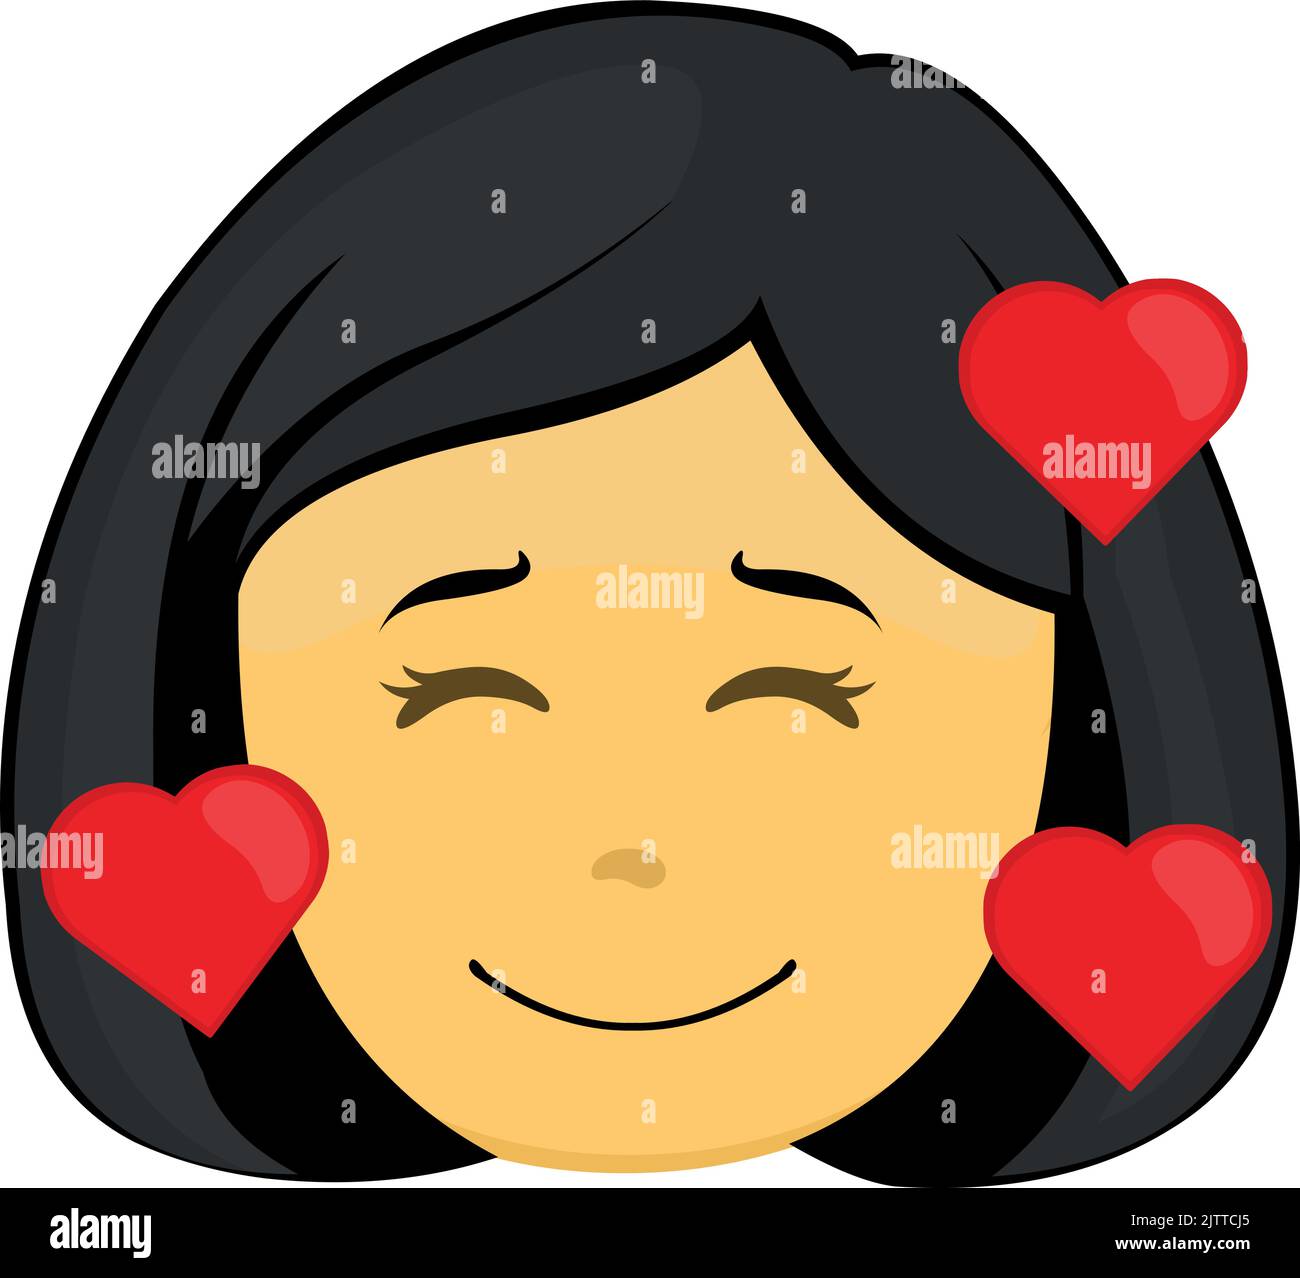 Emoticon vettoriale raffigurazione del volto di una donna cartoon gialla con espressione felice, innamorata e circondata da cuori Illustrazione Vettoriale